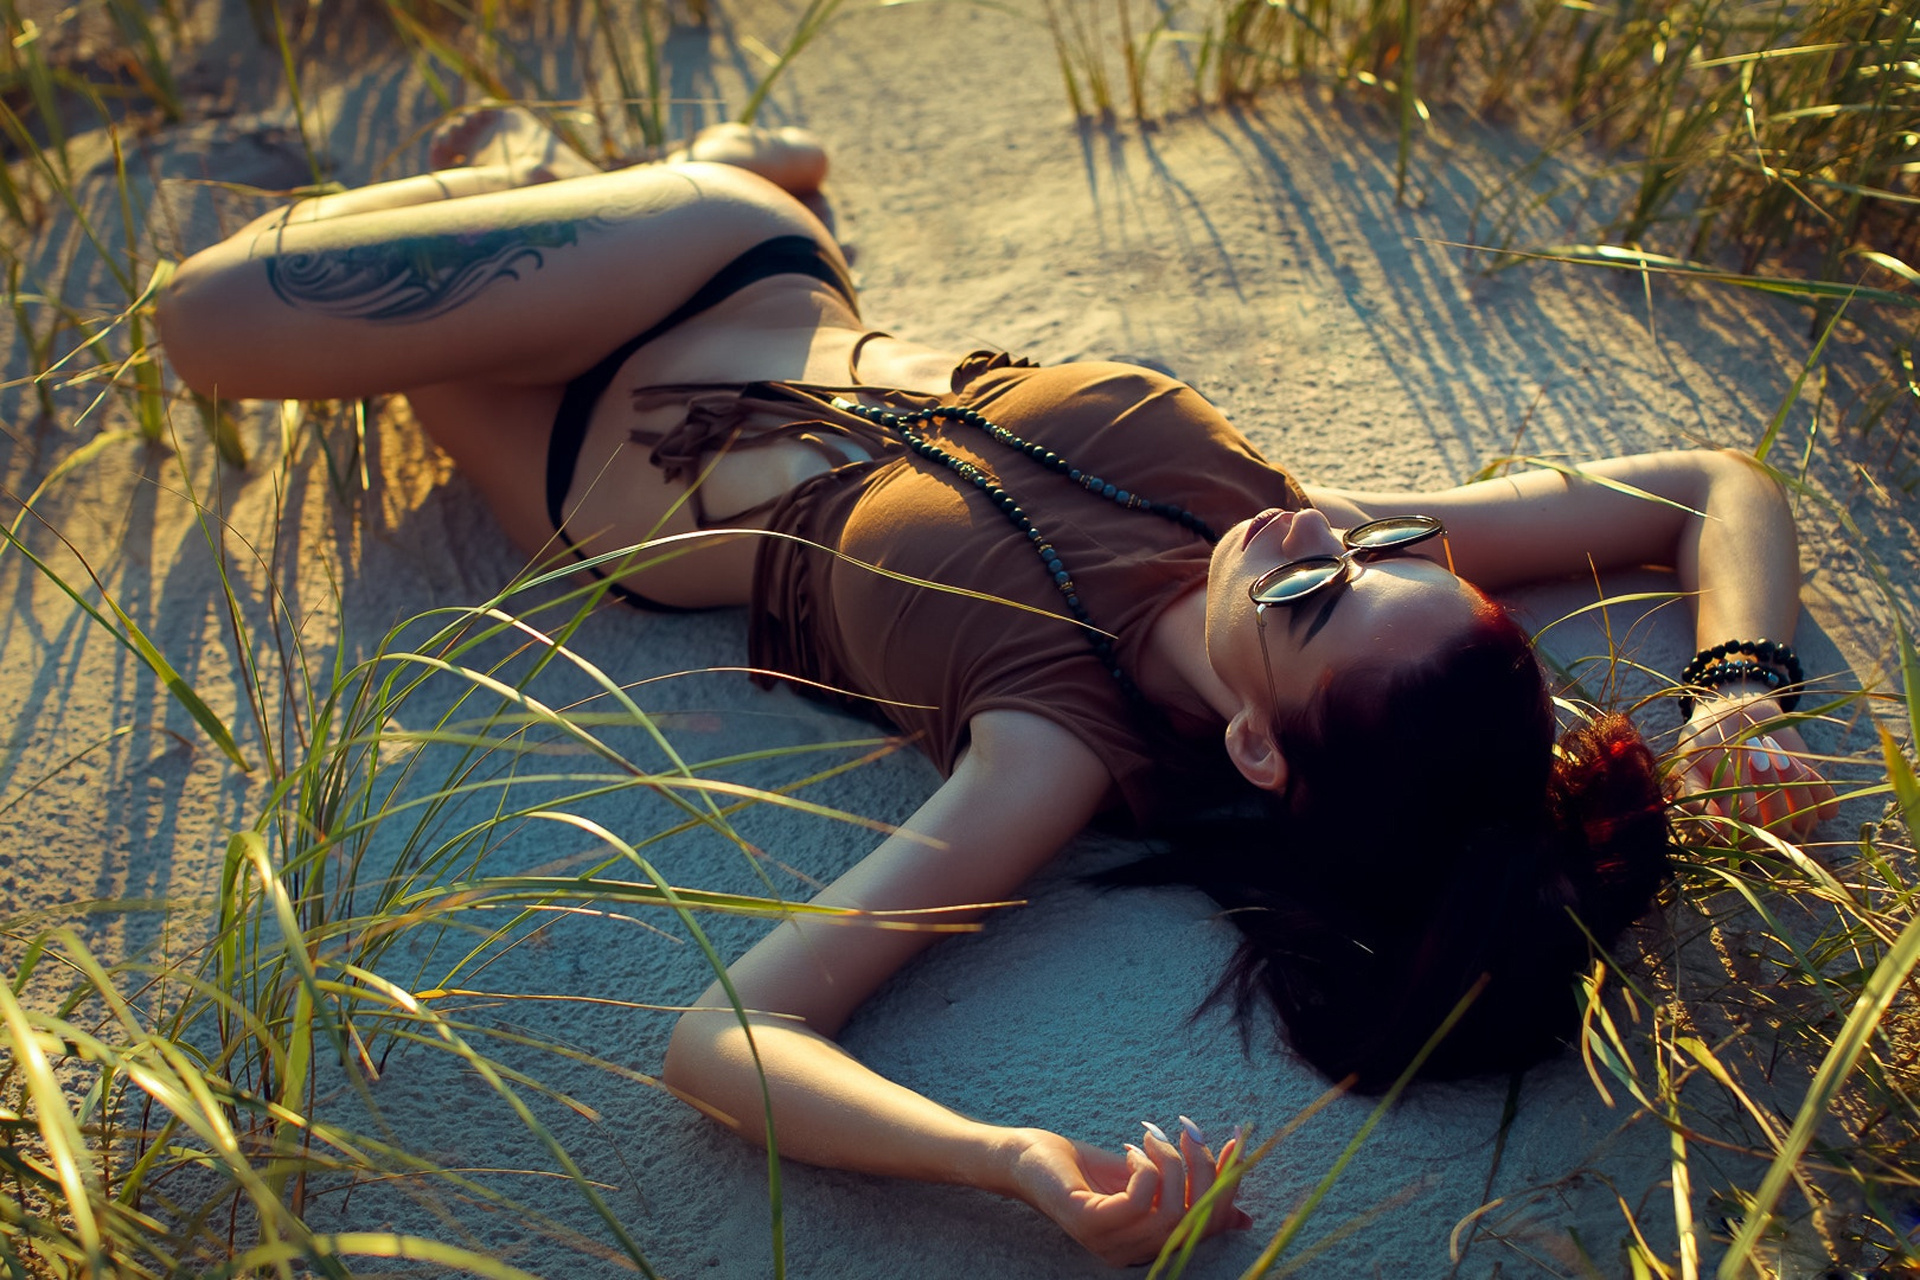 Image: Girl, lying, sand, grass, tattoo, glasses, brunette